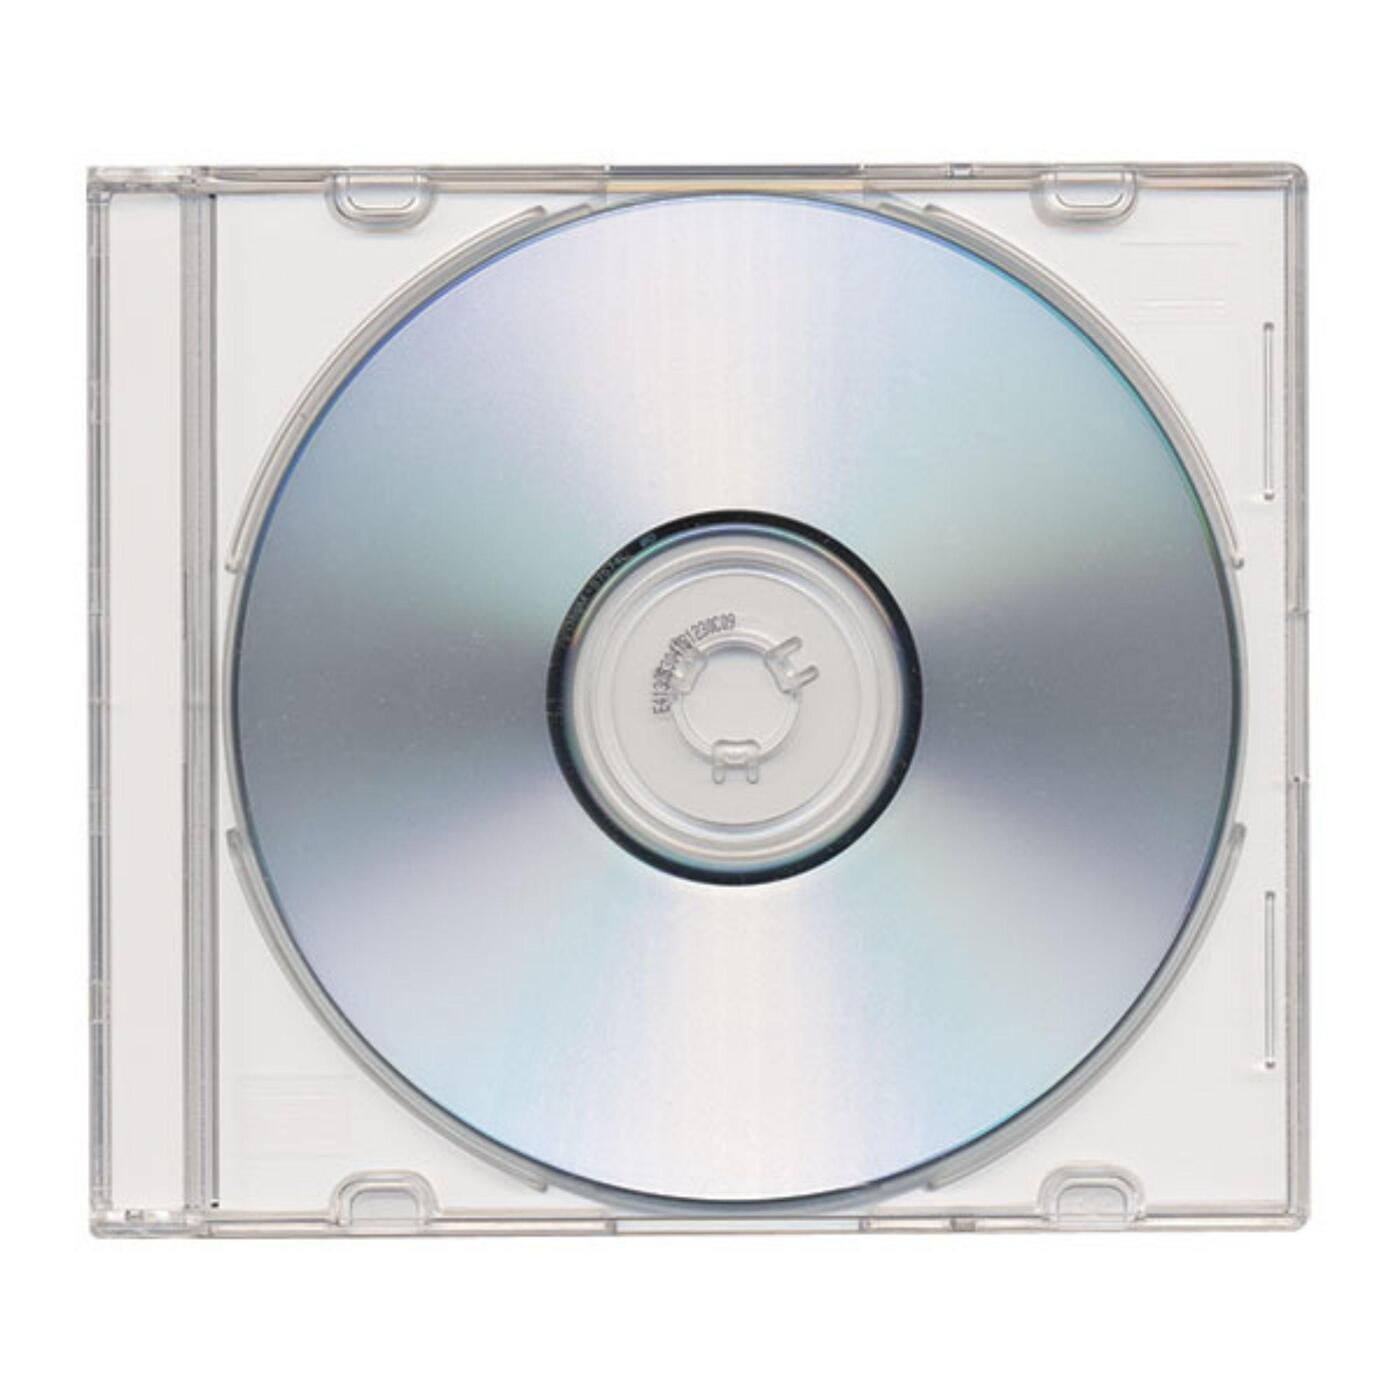 Музыка cd качества. Бокс для дисков 1cd Jewel Case прозрачный (облегченный). Бокс для дисков 1cd Jewel Case прозрачный. Бокс для дисков 1cd Jewel Case черный. CD Case super Jewel for 1 Disc.